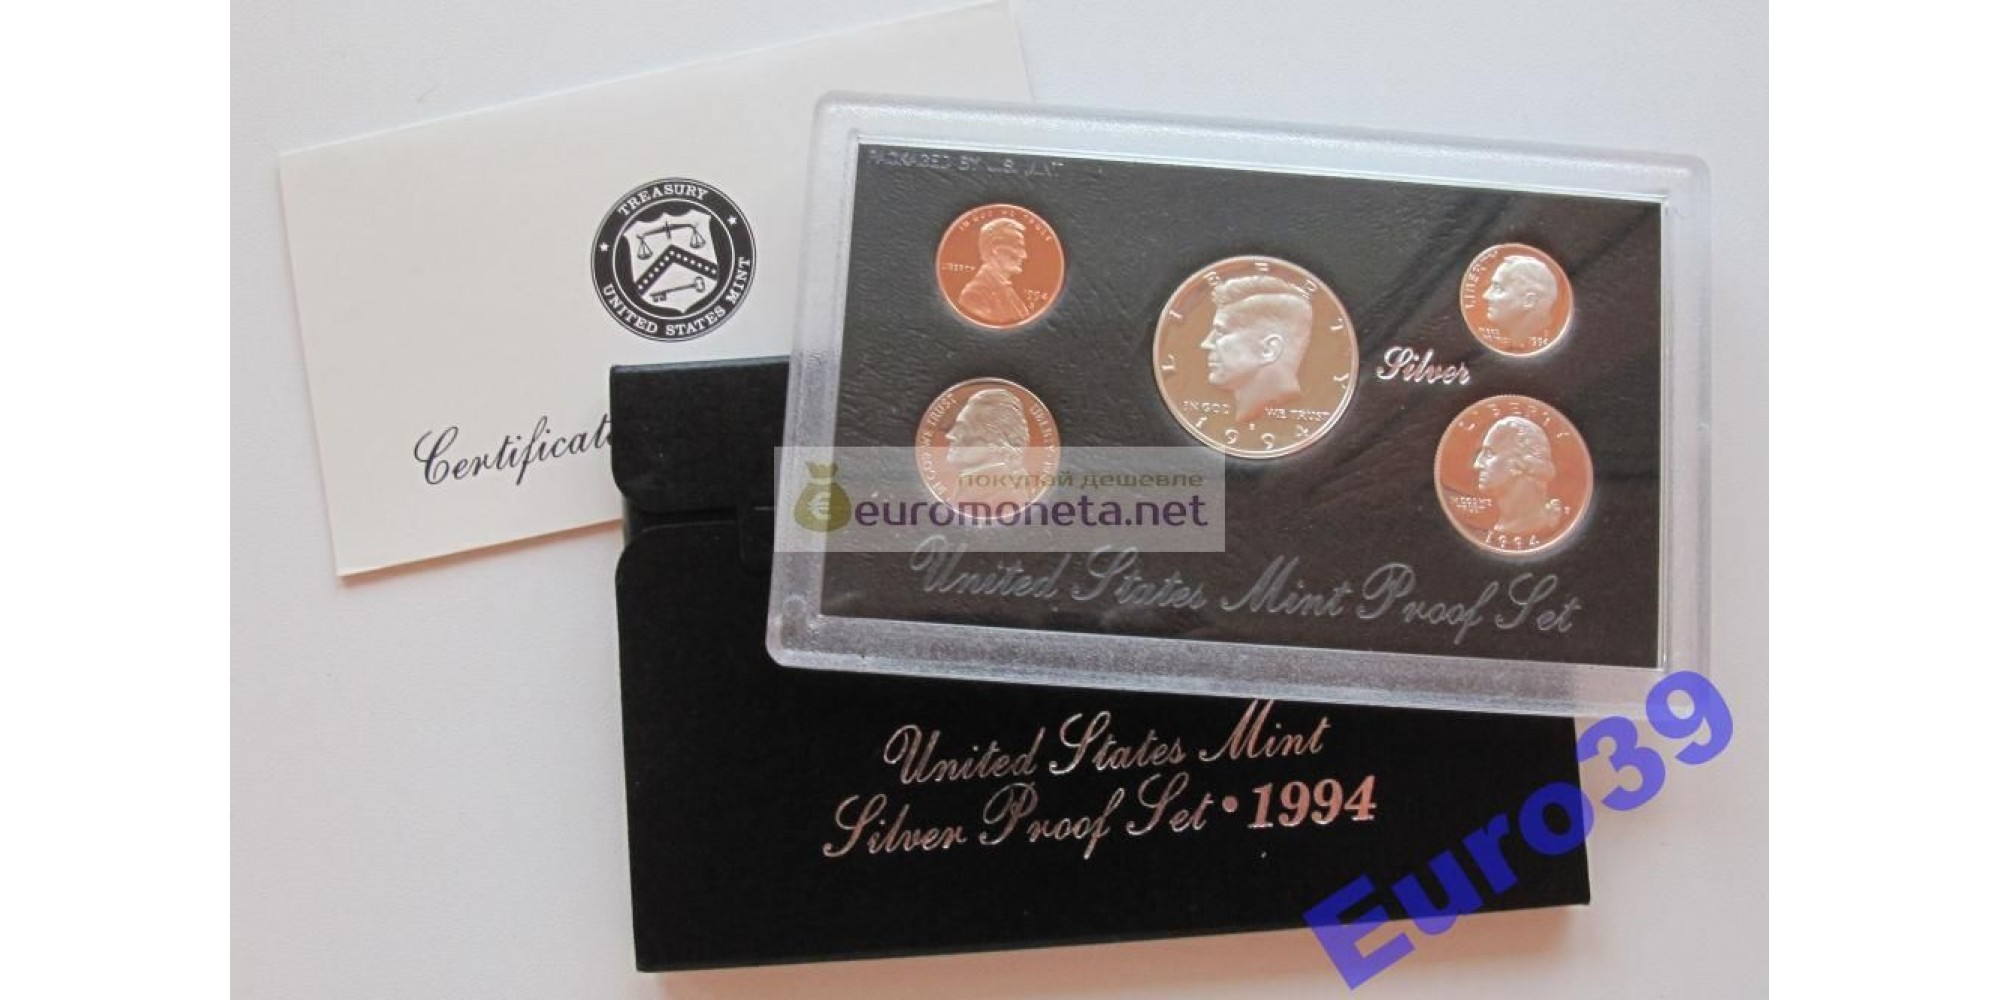 США годовой набор 1994 S 5 монет серебро ПРУФ